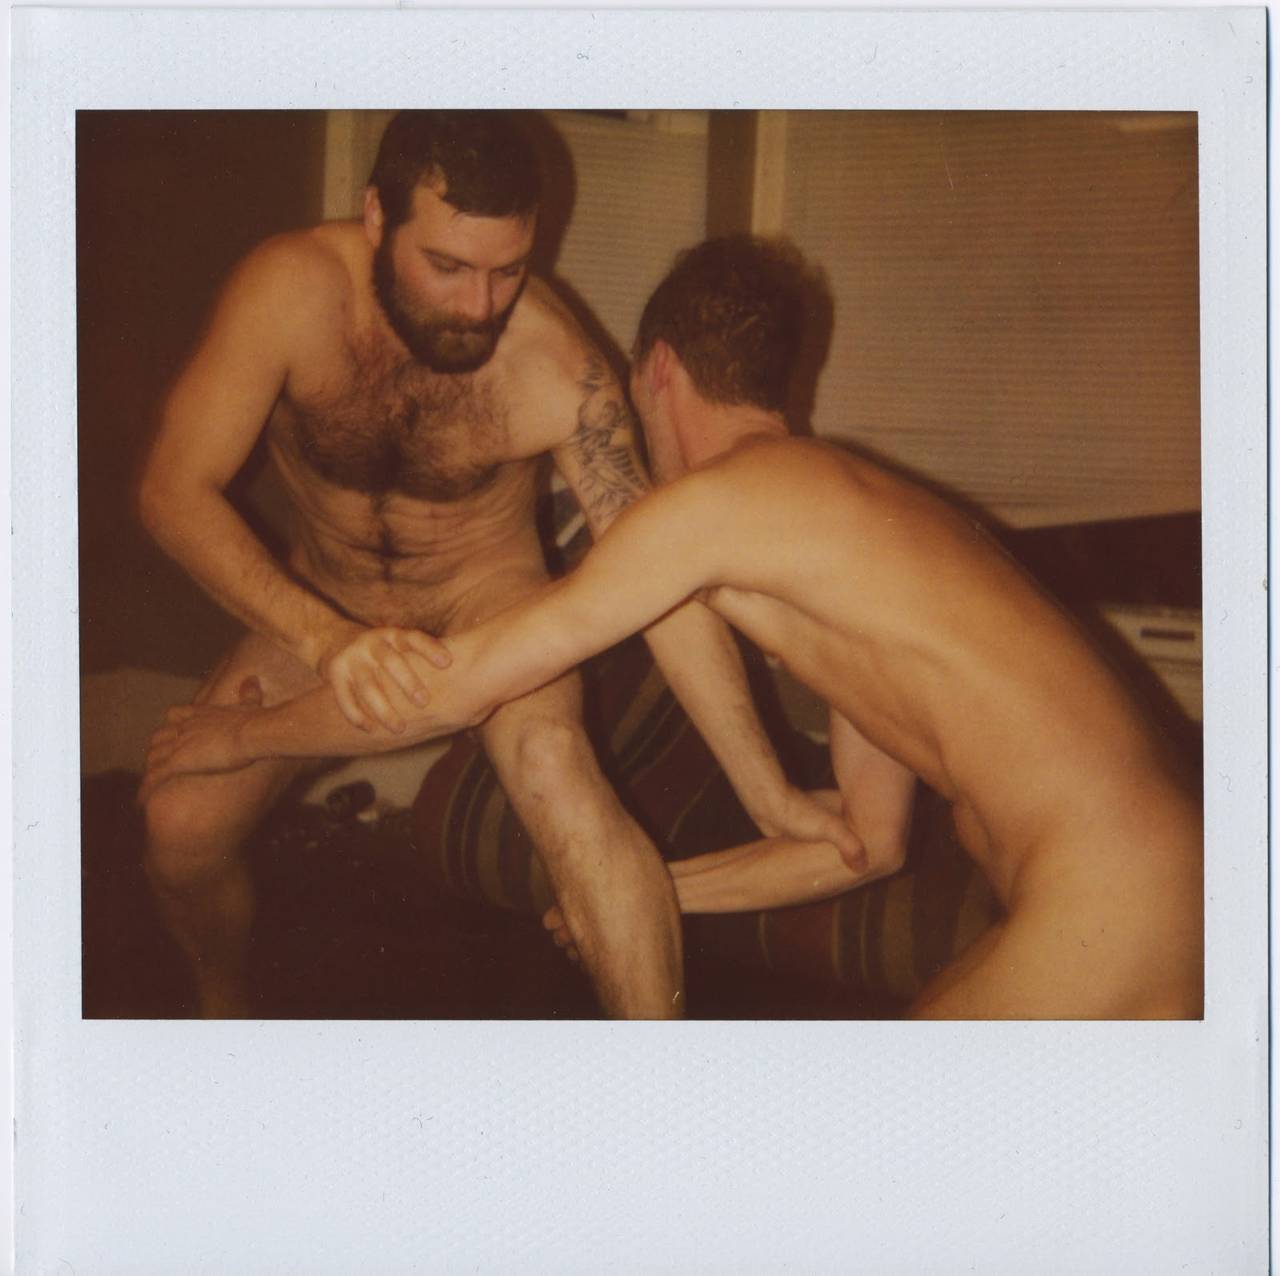 Benjamin Fredrickson Nude Photograph - Zak